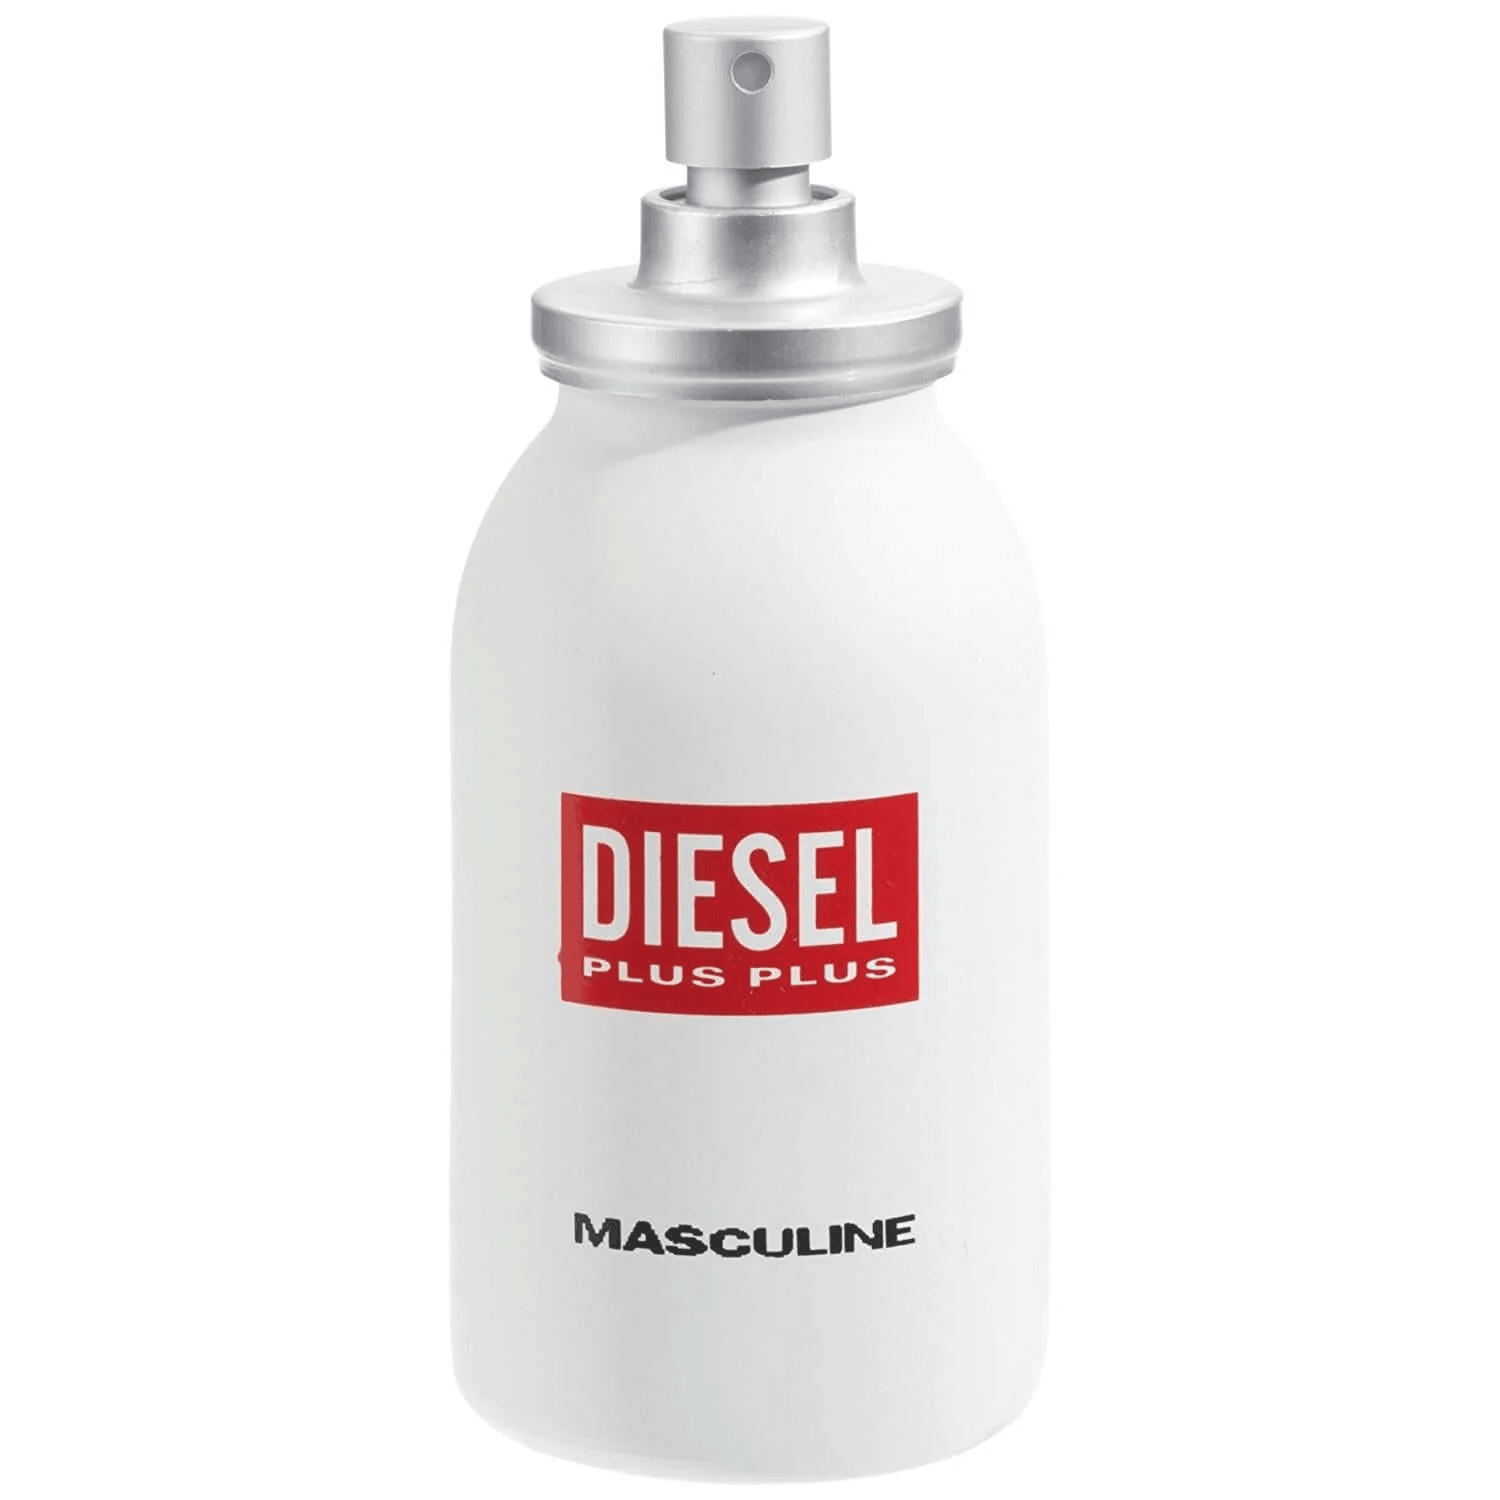 Plus Plus Masculine Diesel- Eau De Toilette 75ml Hombre Caballero